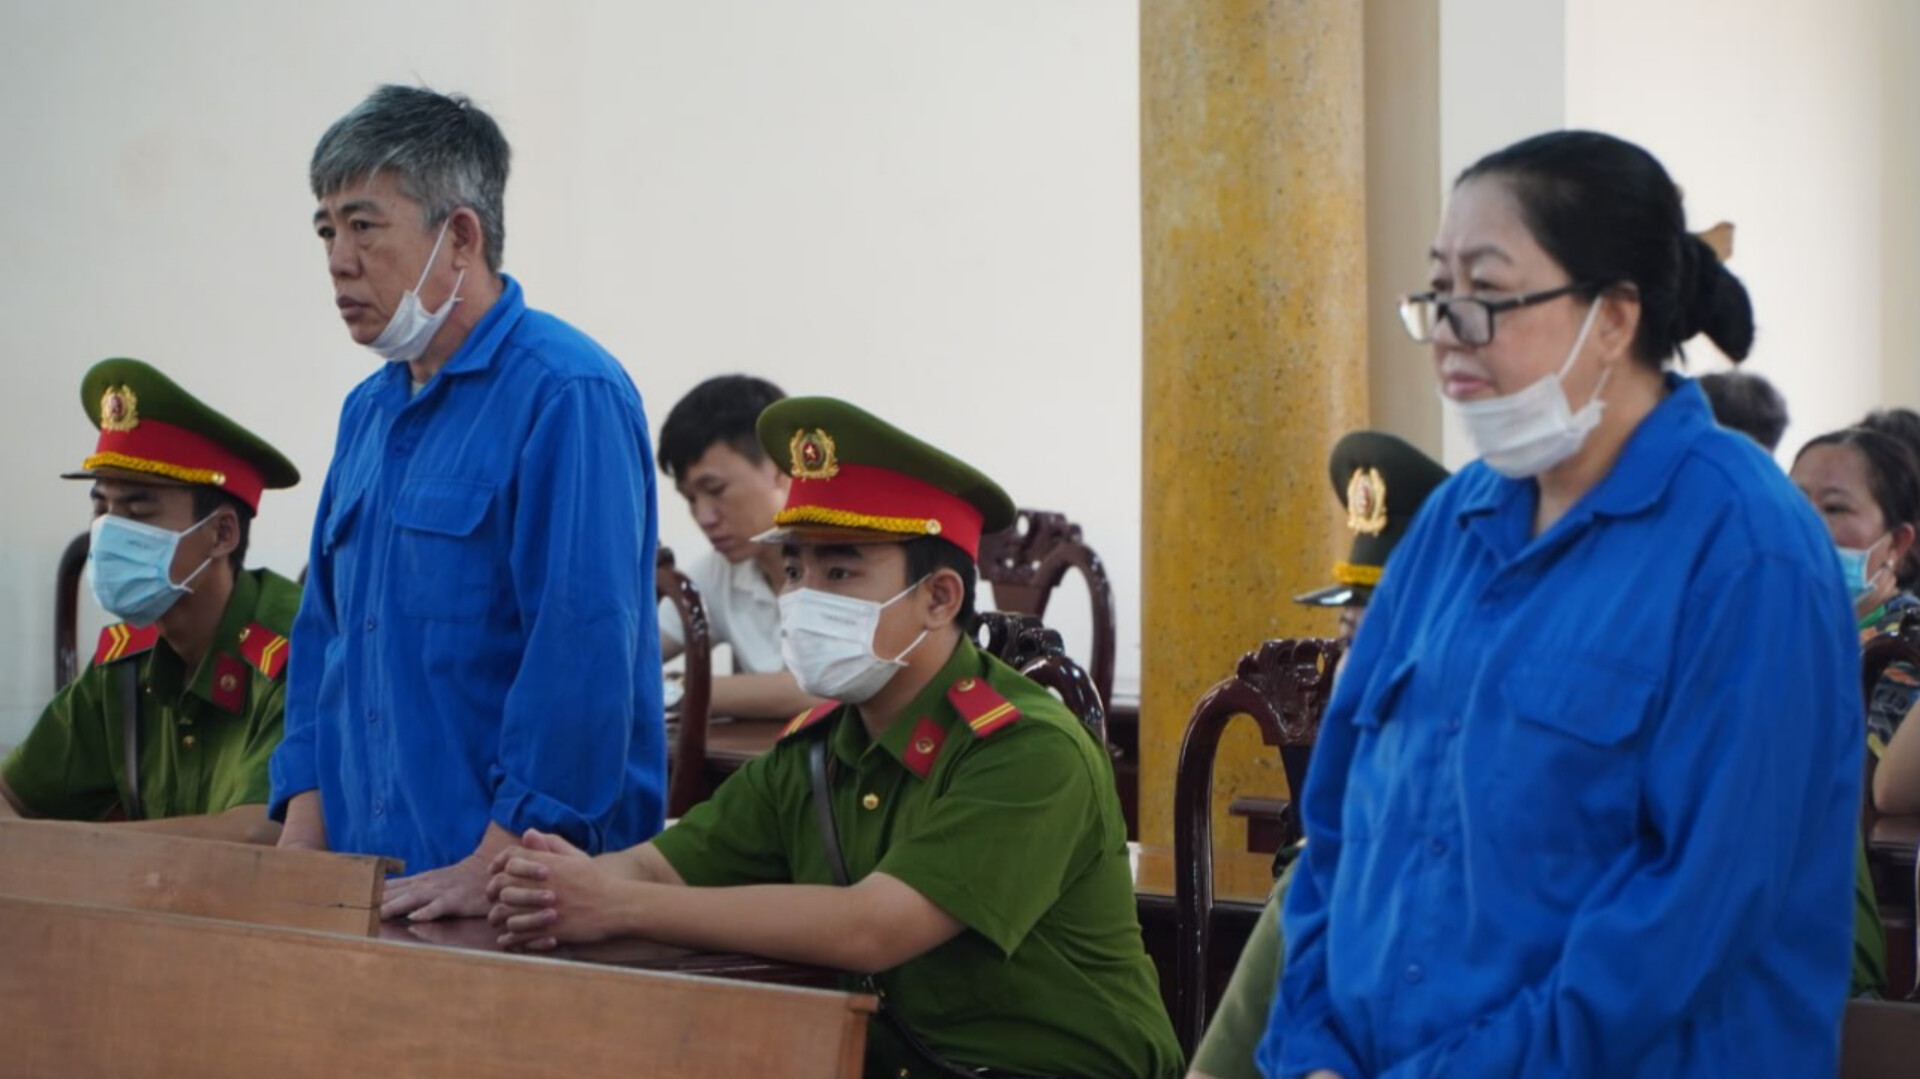 Trùm buôn lậu Mười Tường được sự tiếp tay của cựu cảnh sát ở An Giang bị đưa ra xét xử - Ảnh 1.